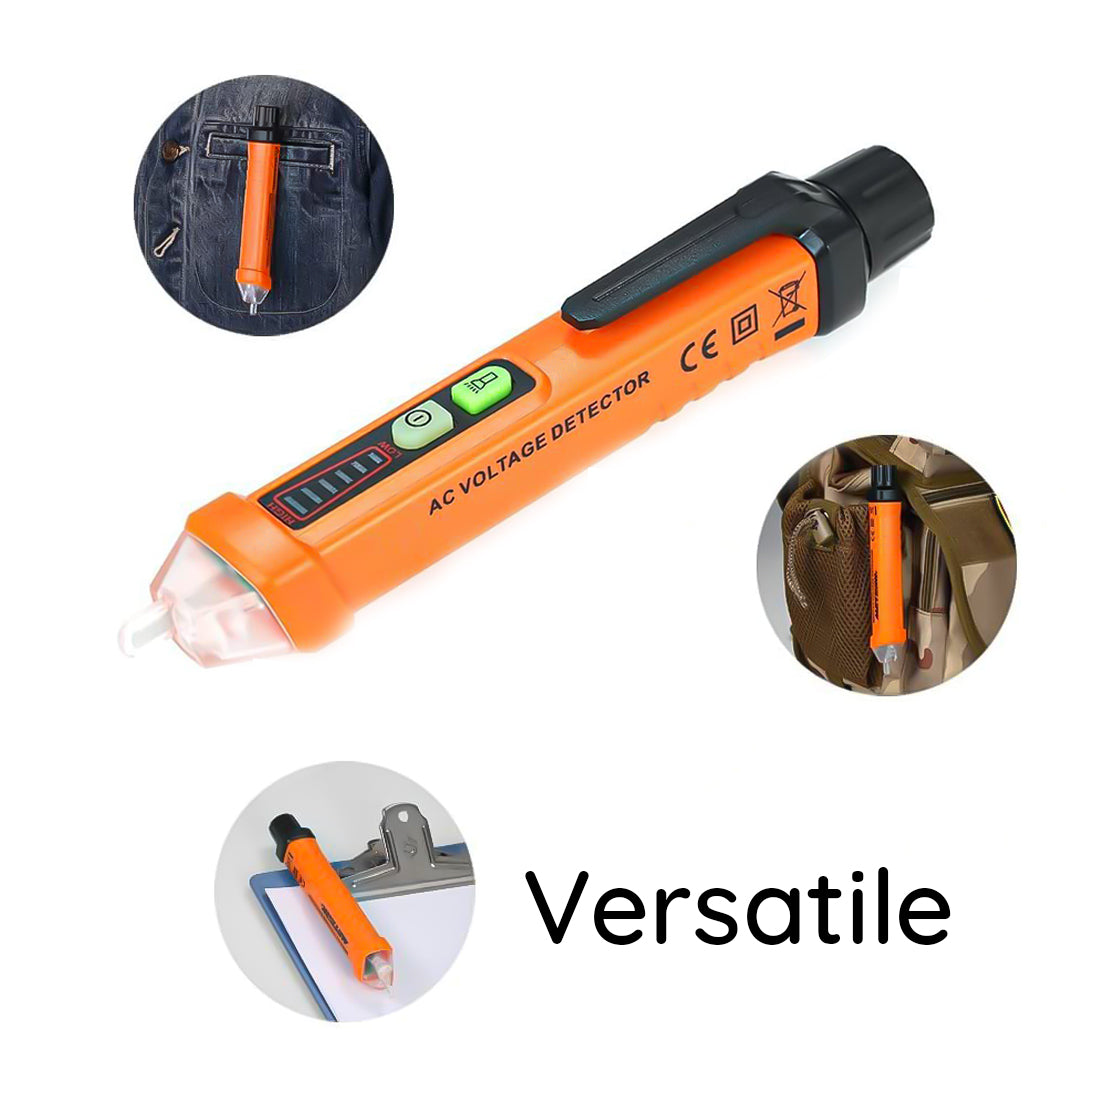 Elcart Rilevatore di tensione AC senza contatto, penna cercafase con led, strumento per verificare la presenza di tensione, tester corrente elettrica